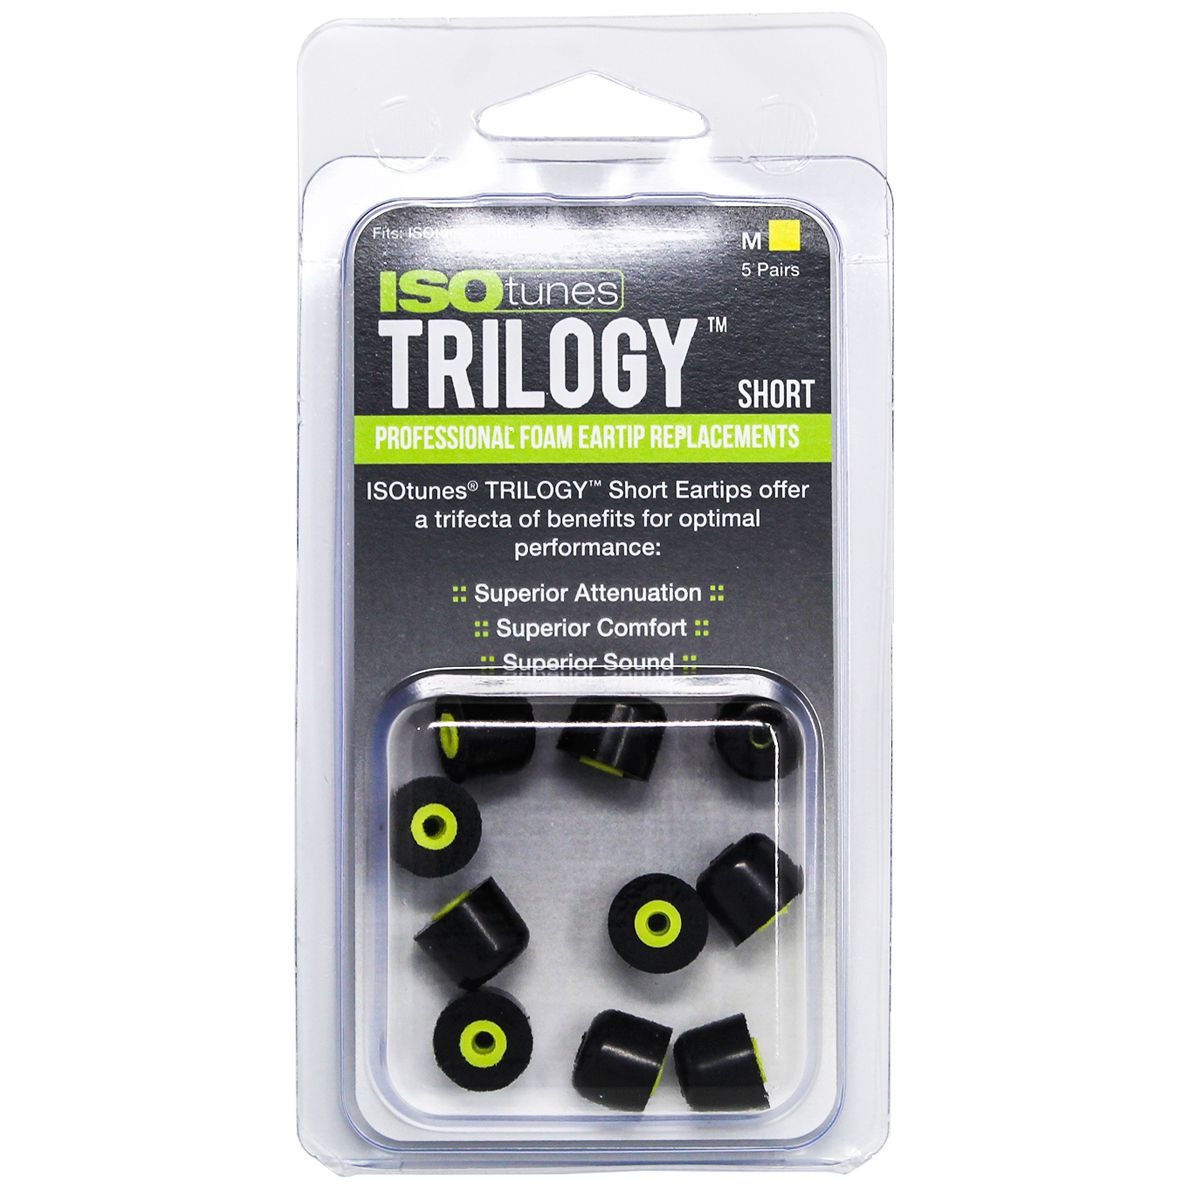 ISOtunes Trilogy Ear Tips - 5 Paar Ersatz-Ohrenstöpsel - für alle ISOtunes Headsets außer Original (IT-00) - Short/M